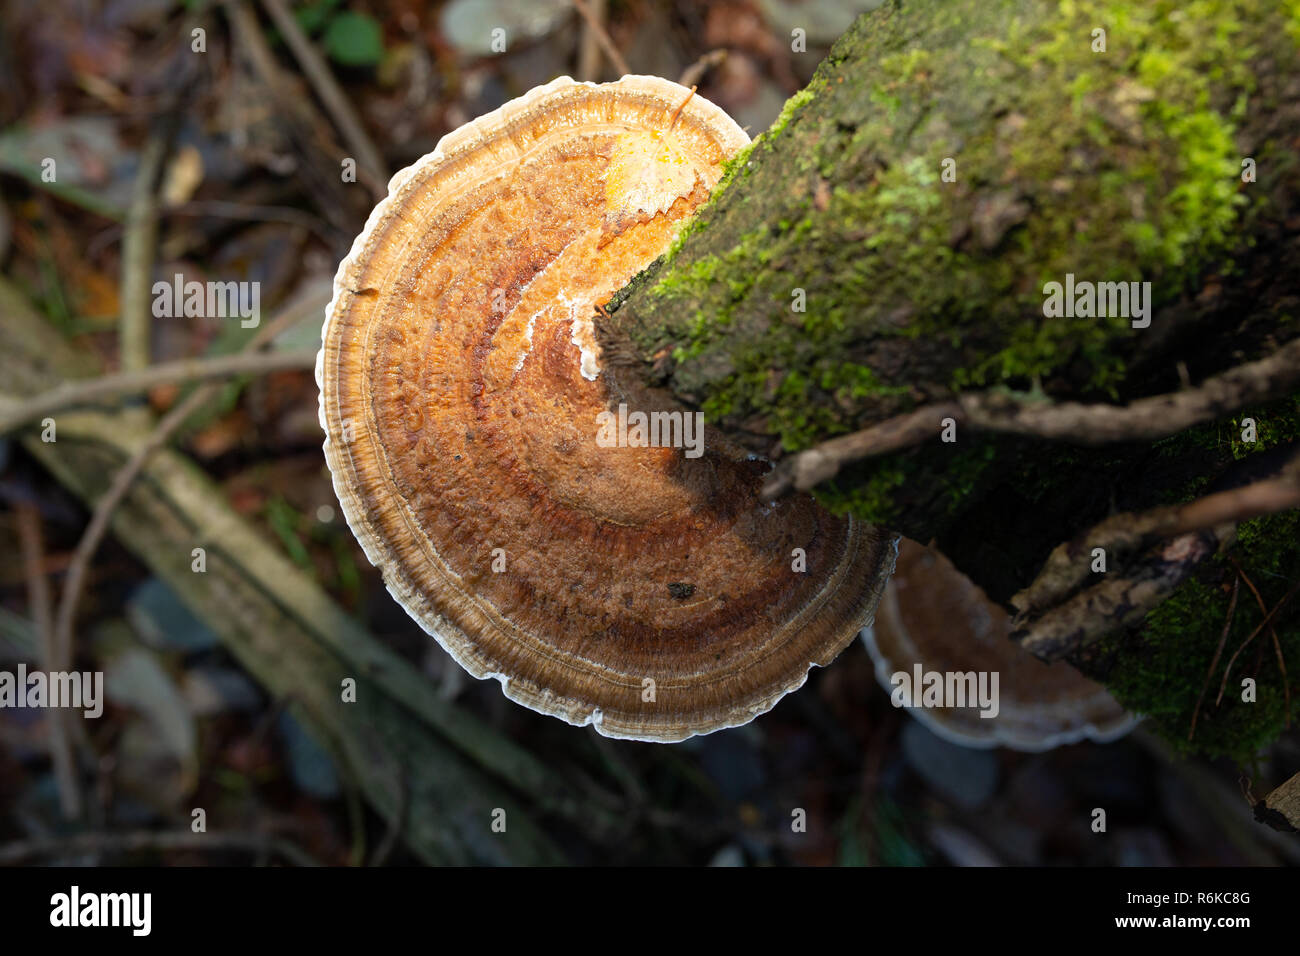 Close-up photographie couleur d'un support circulaire en rougissant polypore sur bois tombé sur-éclairé par le flash de l'appareil photo avec filtre orange. Banque D'Images